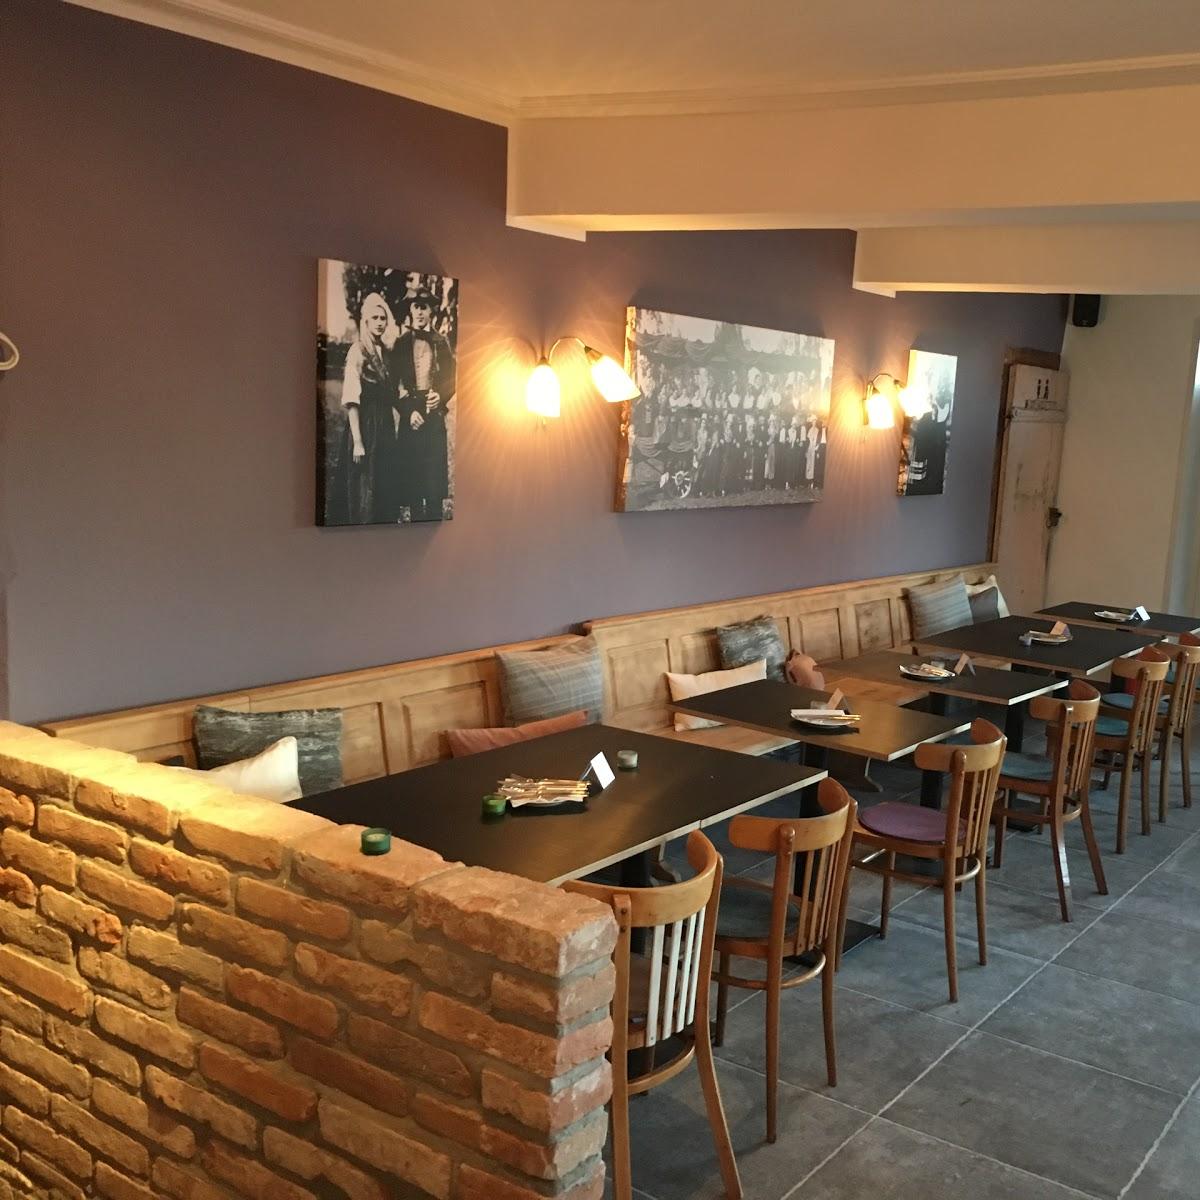 Restaurant "Vinorant - Gasthaus zum Lamm," in Billigheim-Ingenheim